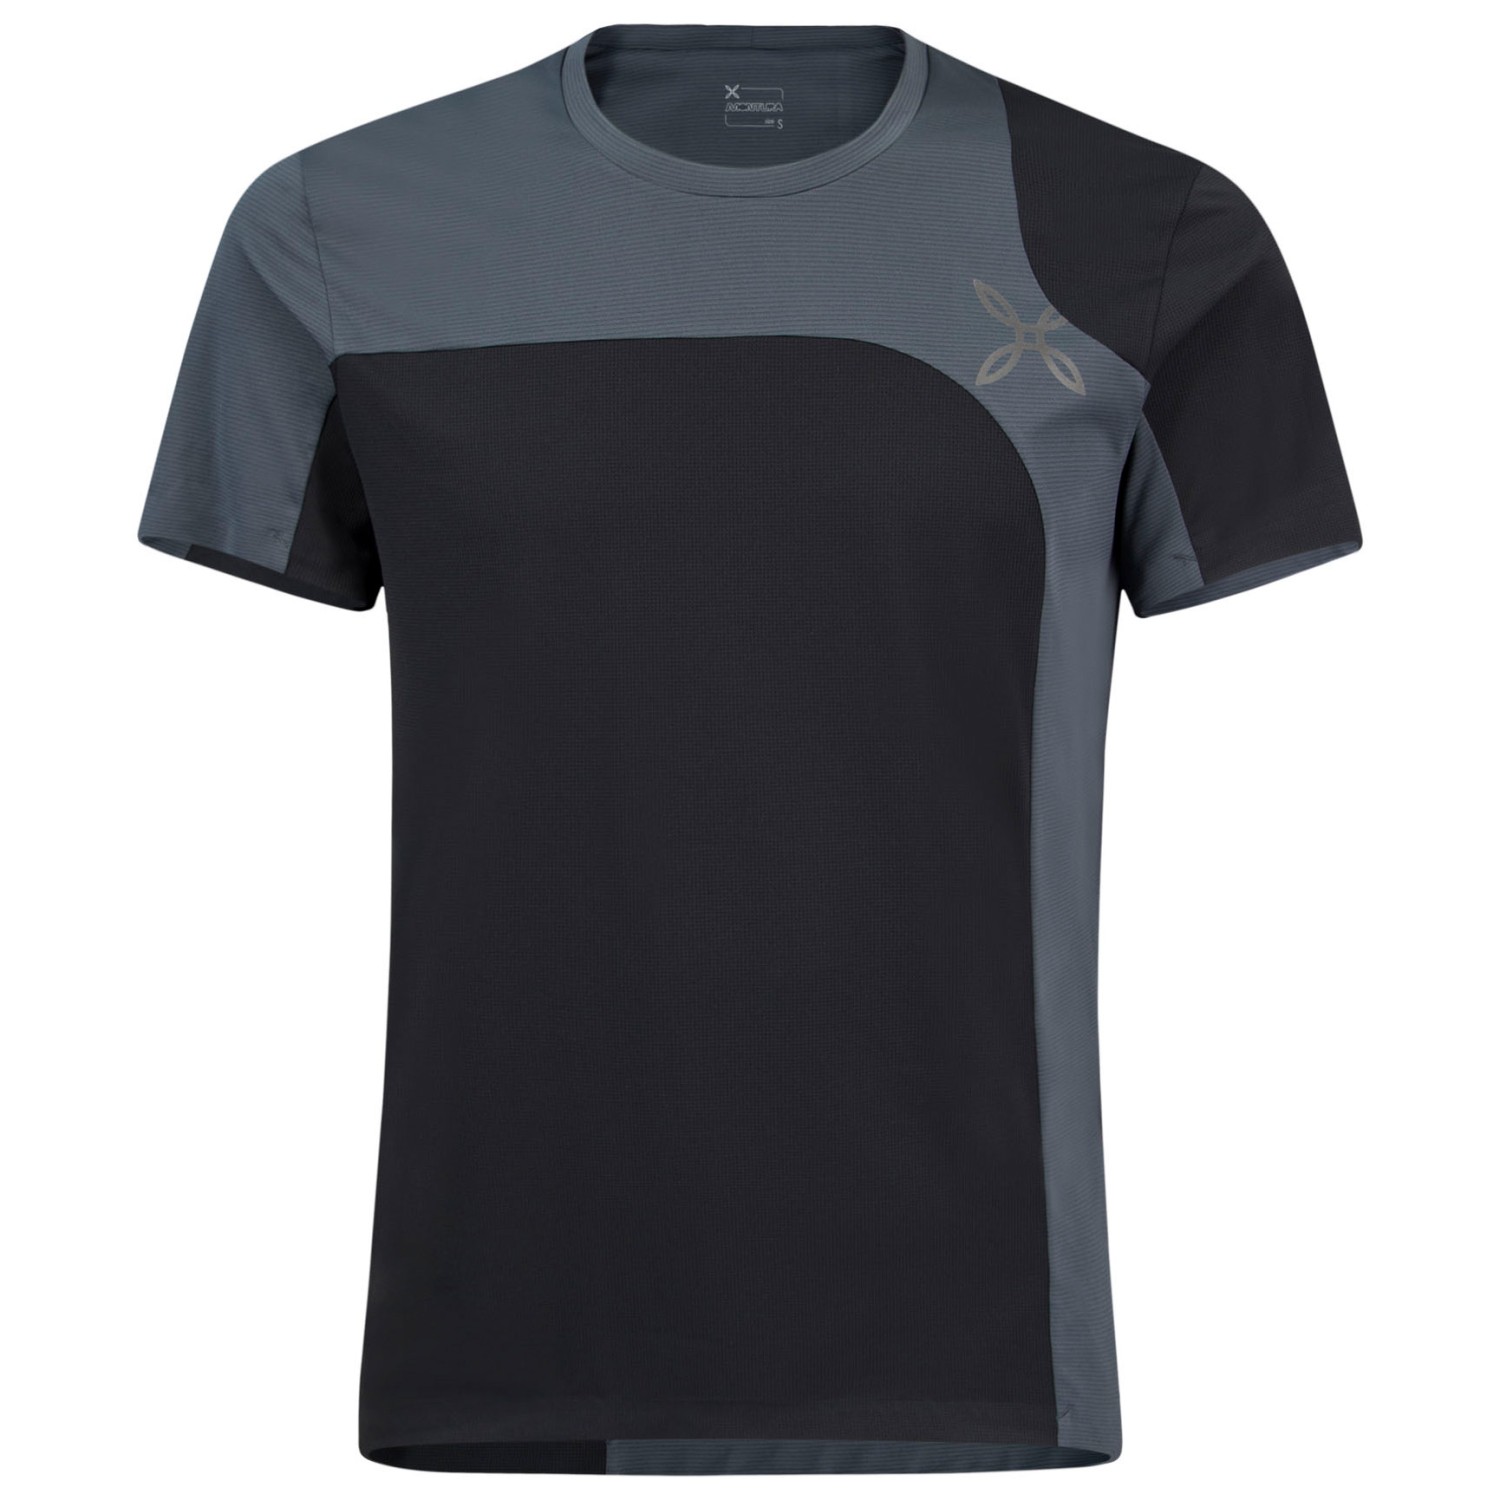 Функциональная рубашка Montura Outdoor Style T Shirt, цвет Nero/Piombo цена и фото